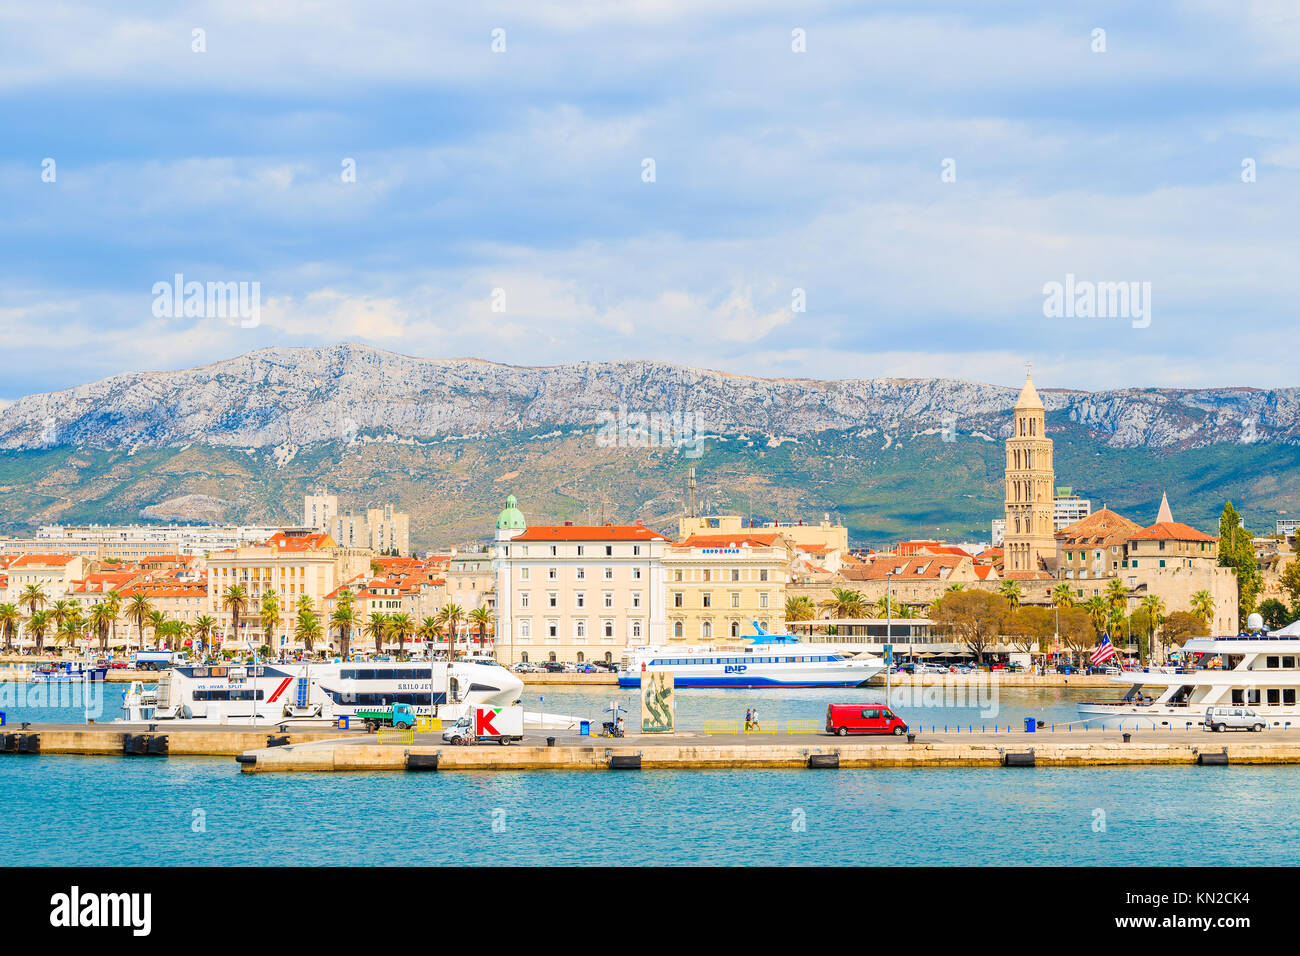 Hafen von Split, Kroatien - Sep 7, 2017: Blick auf den Hafen von Split mit historischen Gebäuden, Kroatien. Stockfoto